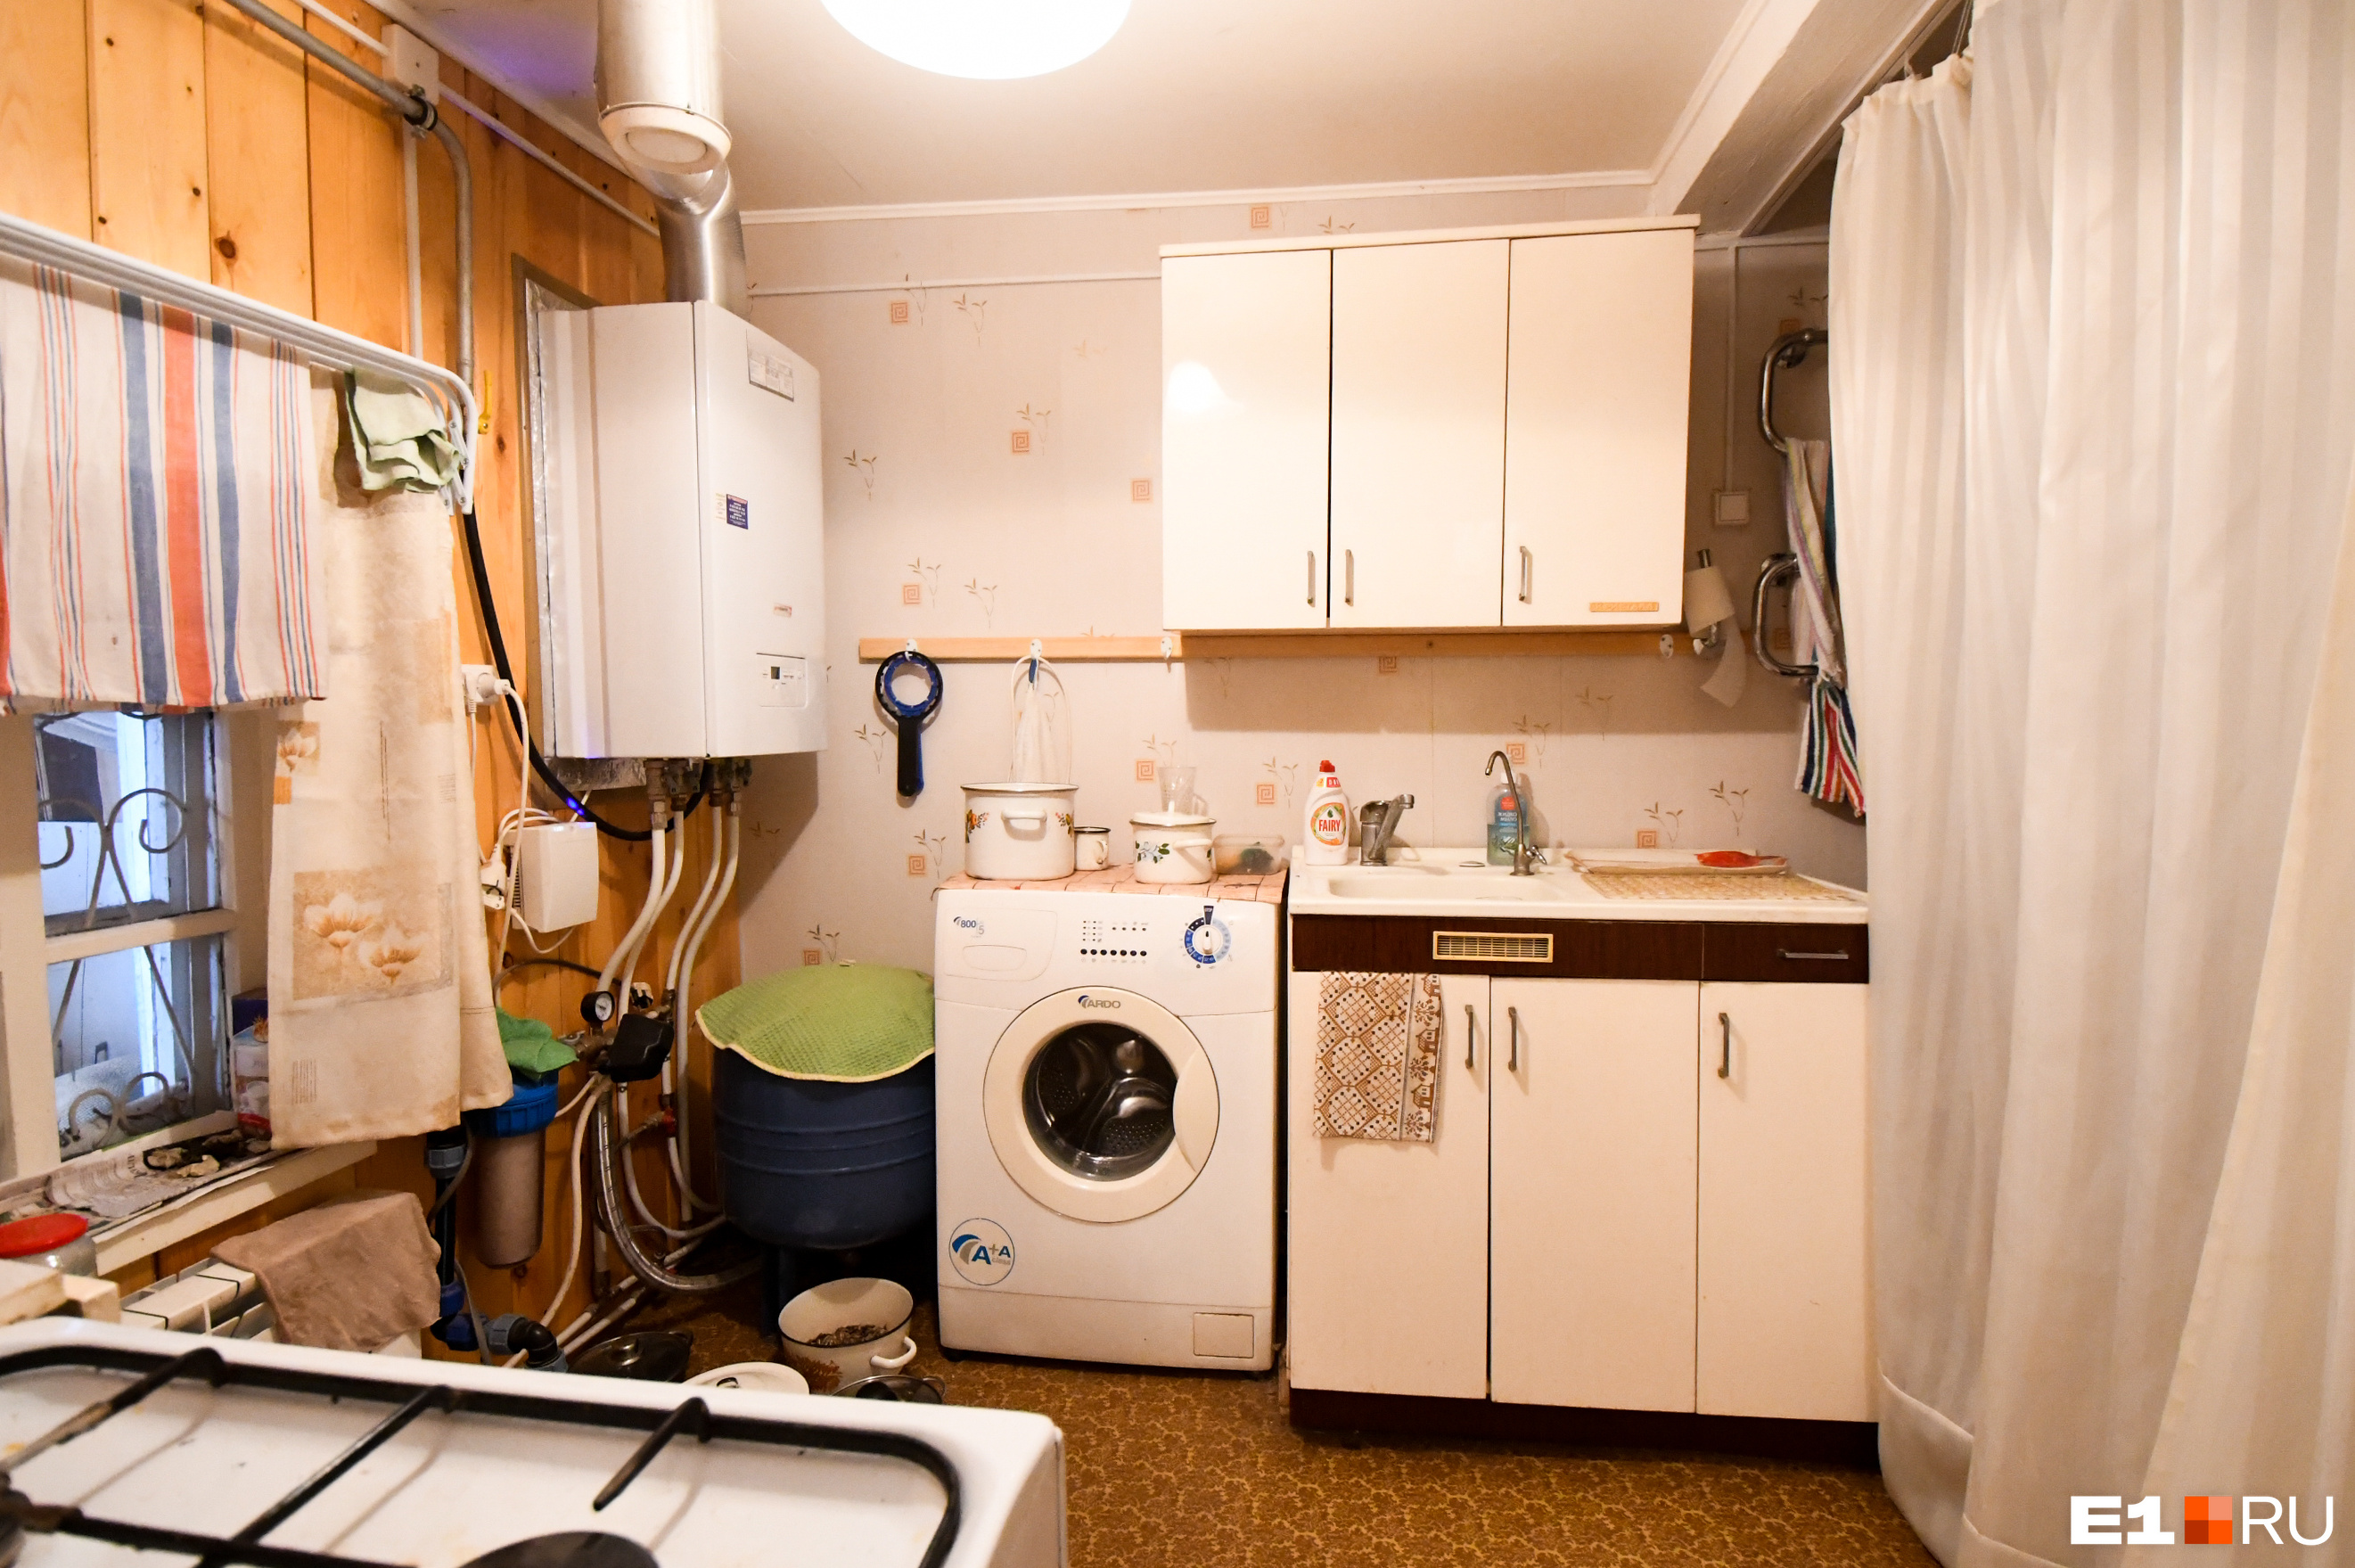 Отопление и плита в доме газовые, но на стиральную машину и скважину энергии хватает